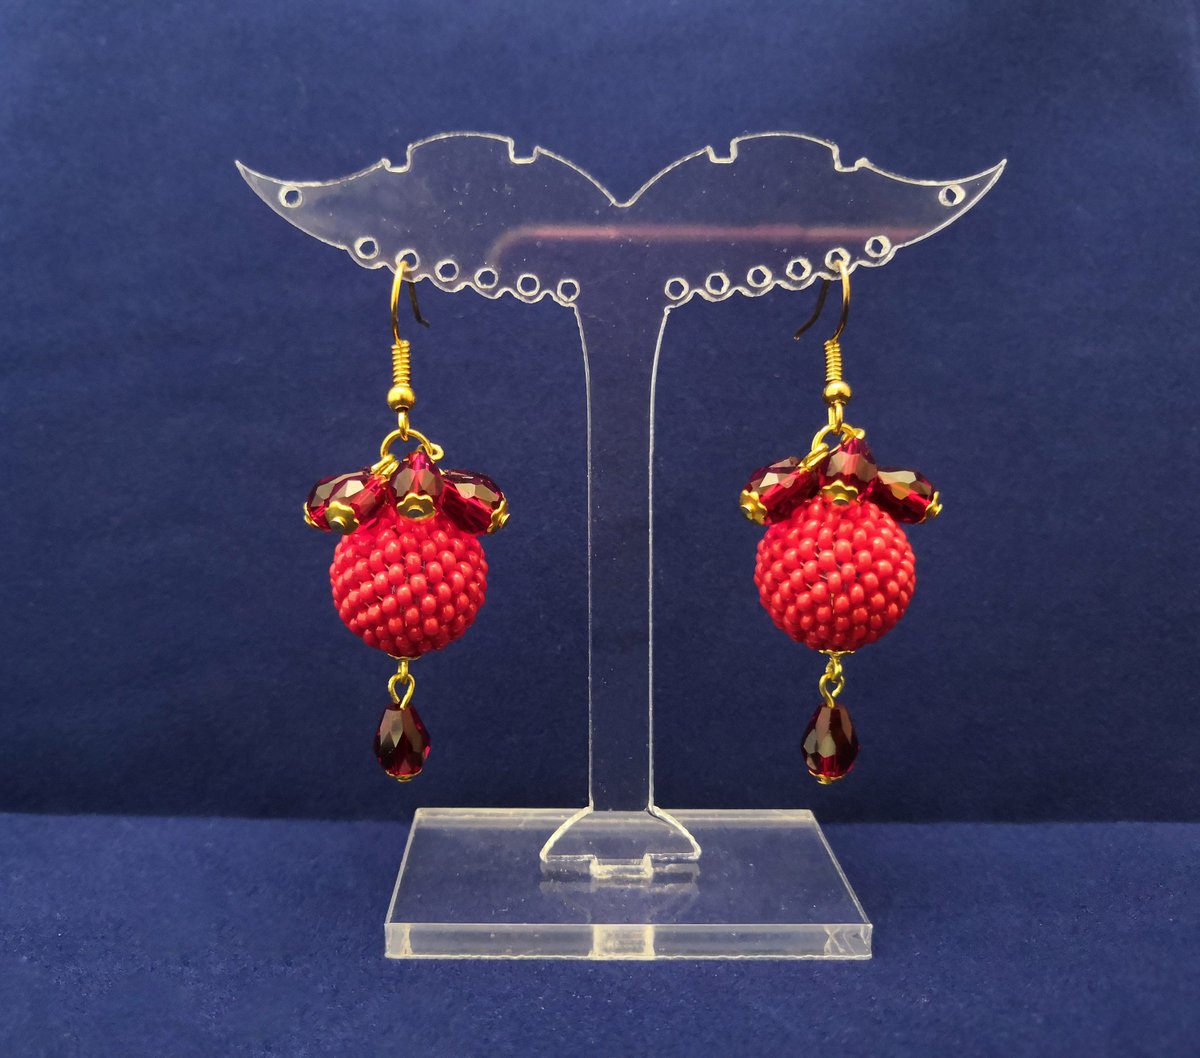 Red dangle teardrop earrings, bon bon earrings
etsy.com/listing/692878…
#redearrings #teardropearrings #bonbonearrings #handmadeearrings #beadworkearrings #beadedearrings